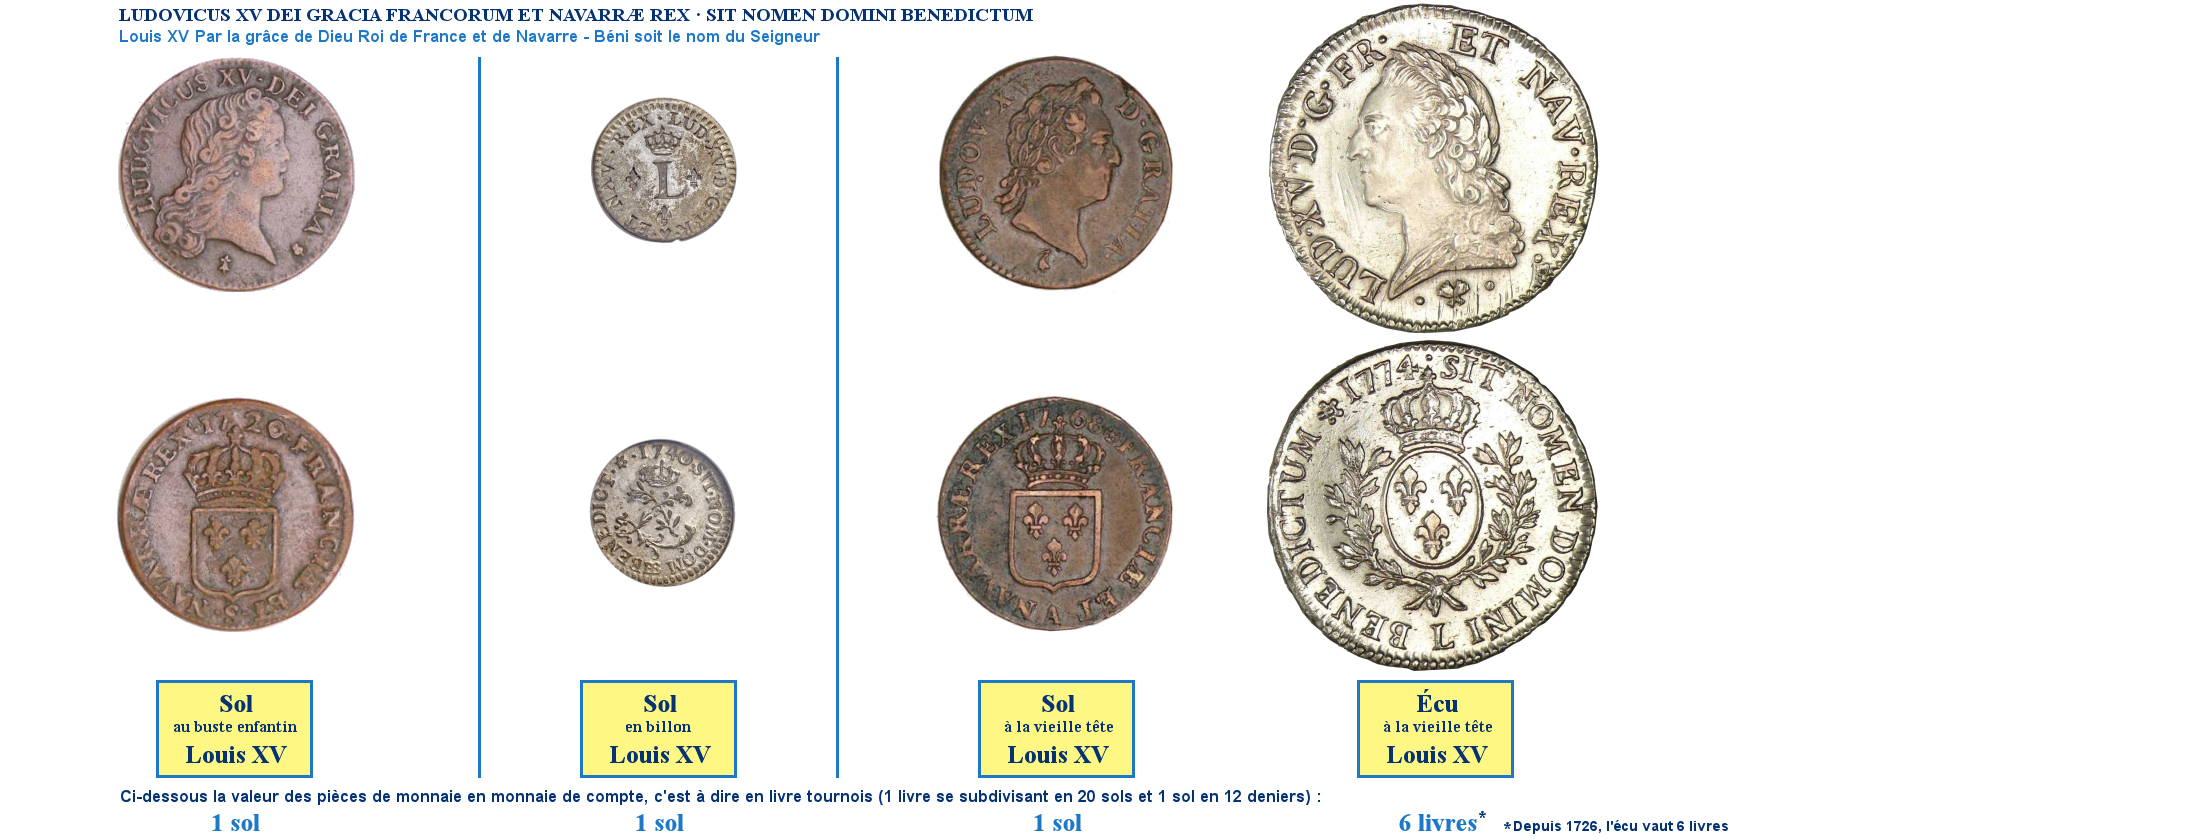 Photos de pièces de monnaies de Louis XV